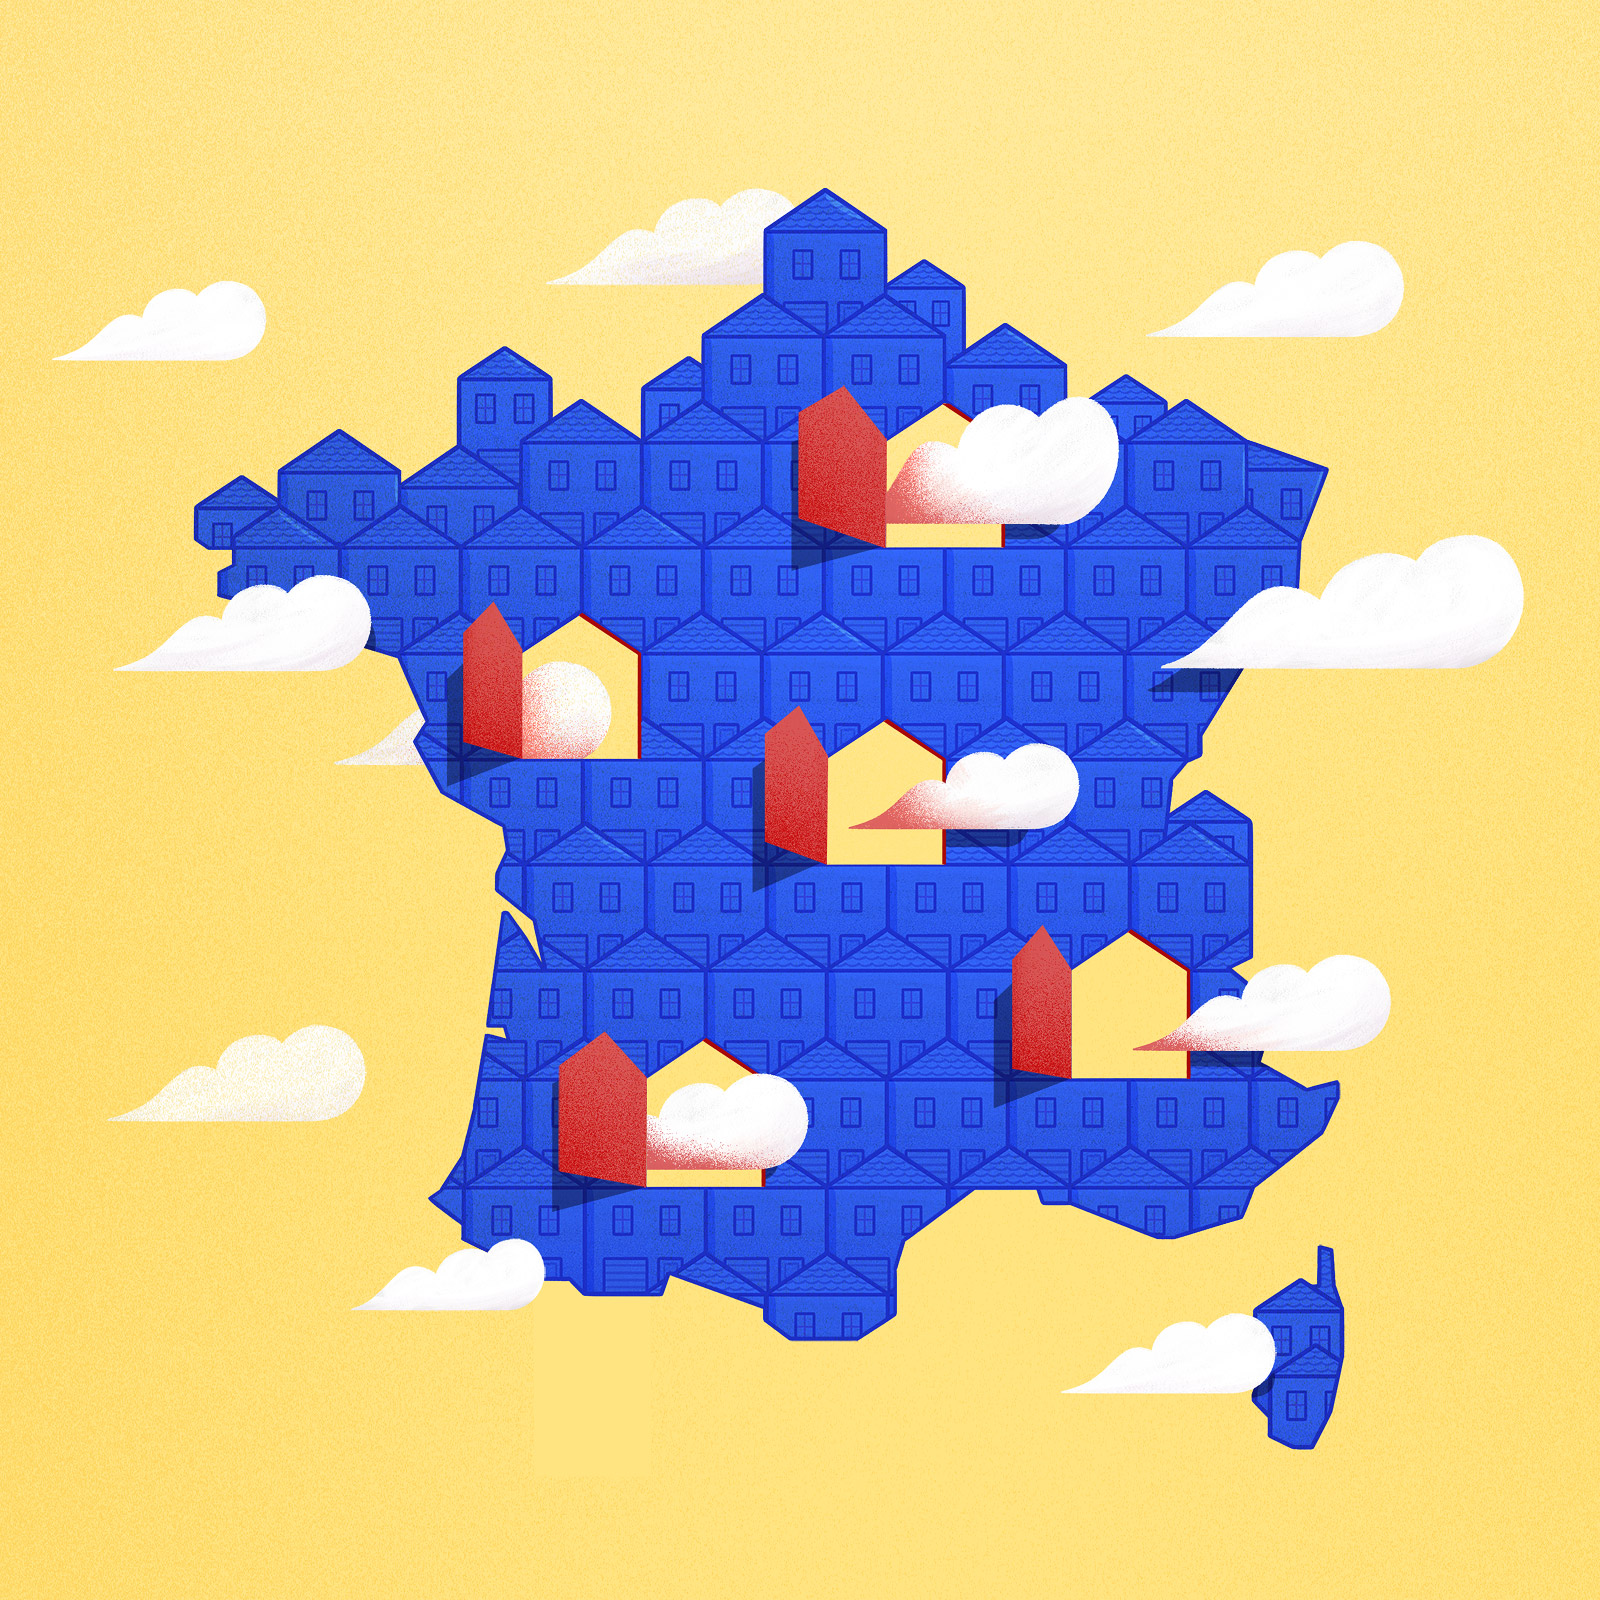 Une carte de France faite de multiples petites maisonnettes collées les unes aux autres et percée de 5 trous en forme de maison à travers lesquels les nuages passent